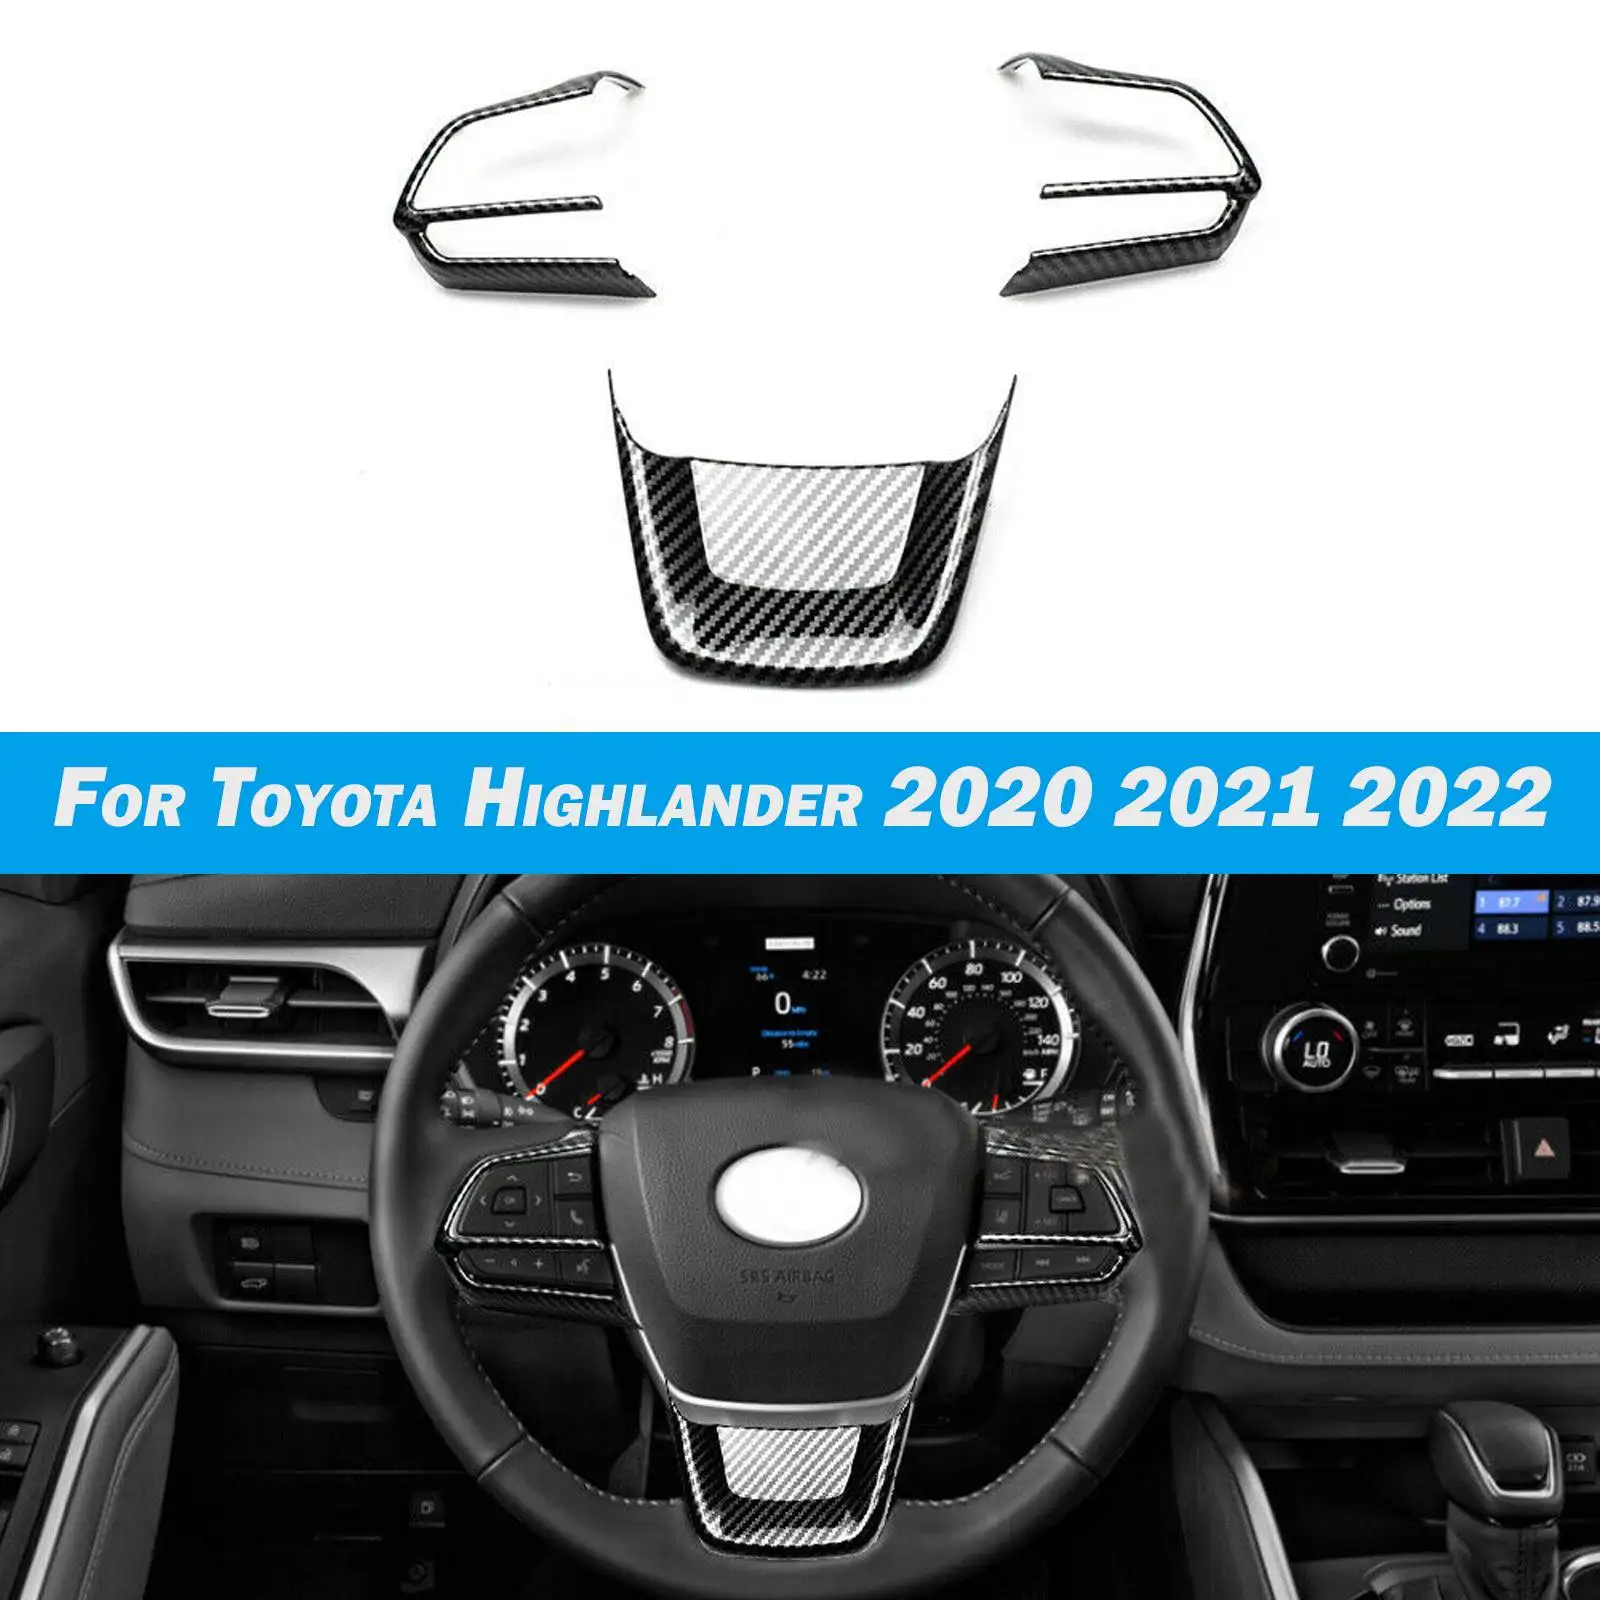 

Для Toyota Highlander 2020 2021 2022 ABS углеродное волокно кнопка переключения рулевого колеса автомобиля крышка отделка стикер аксессуары для интерьера